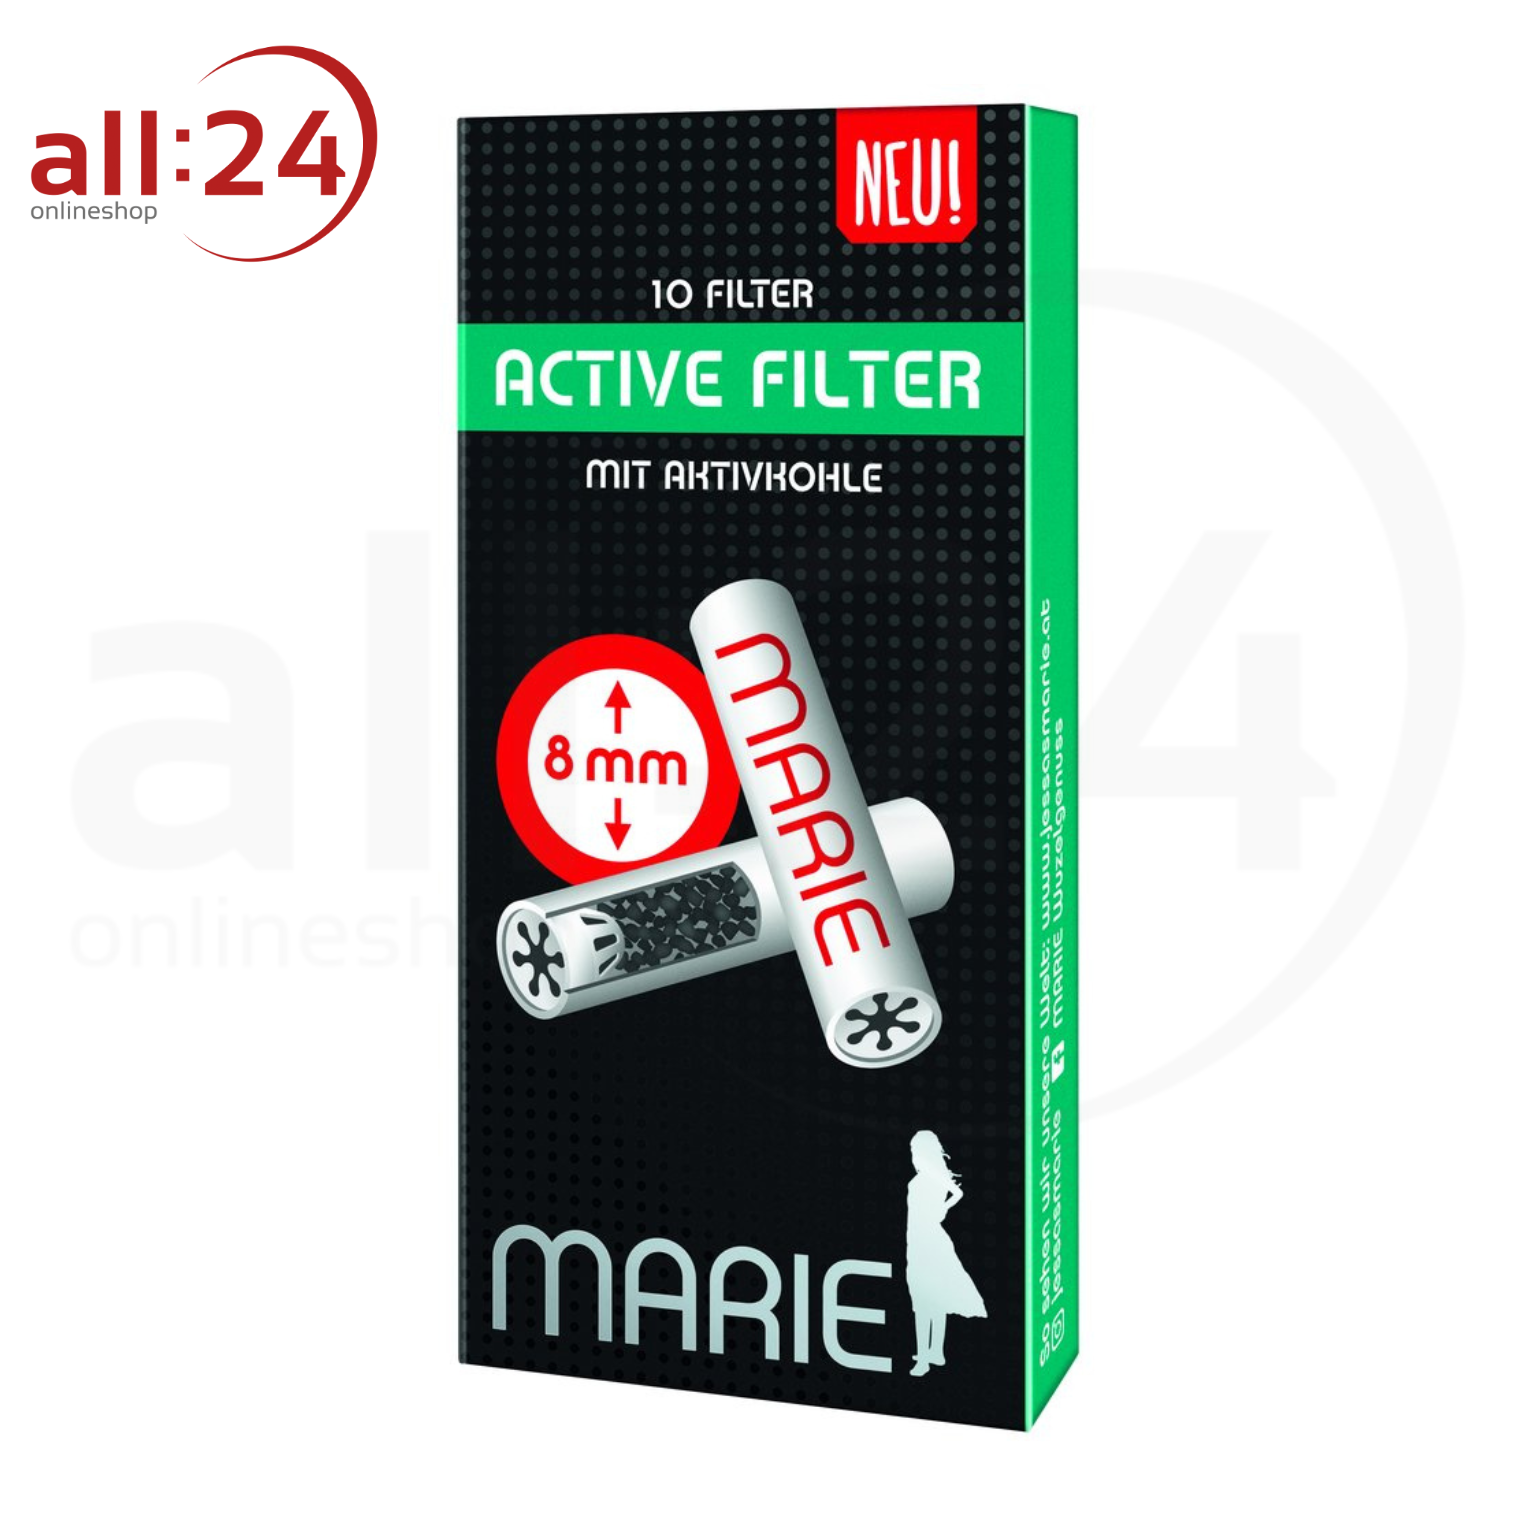 MARIE Active Filter 8mm - 25er Karton mit je 10 Filtern 